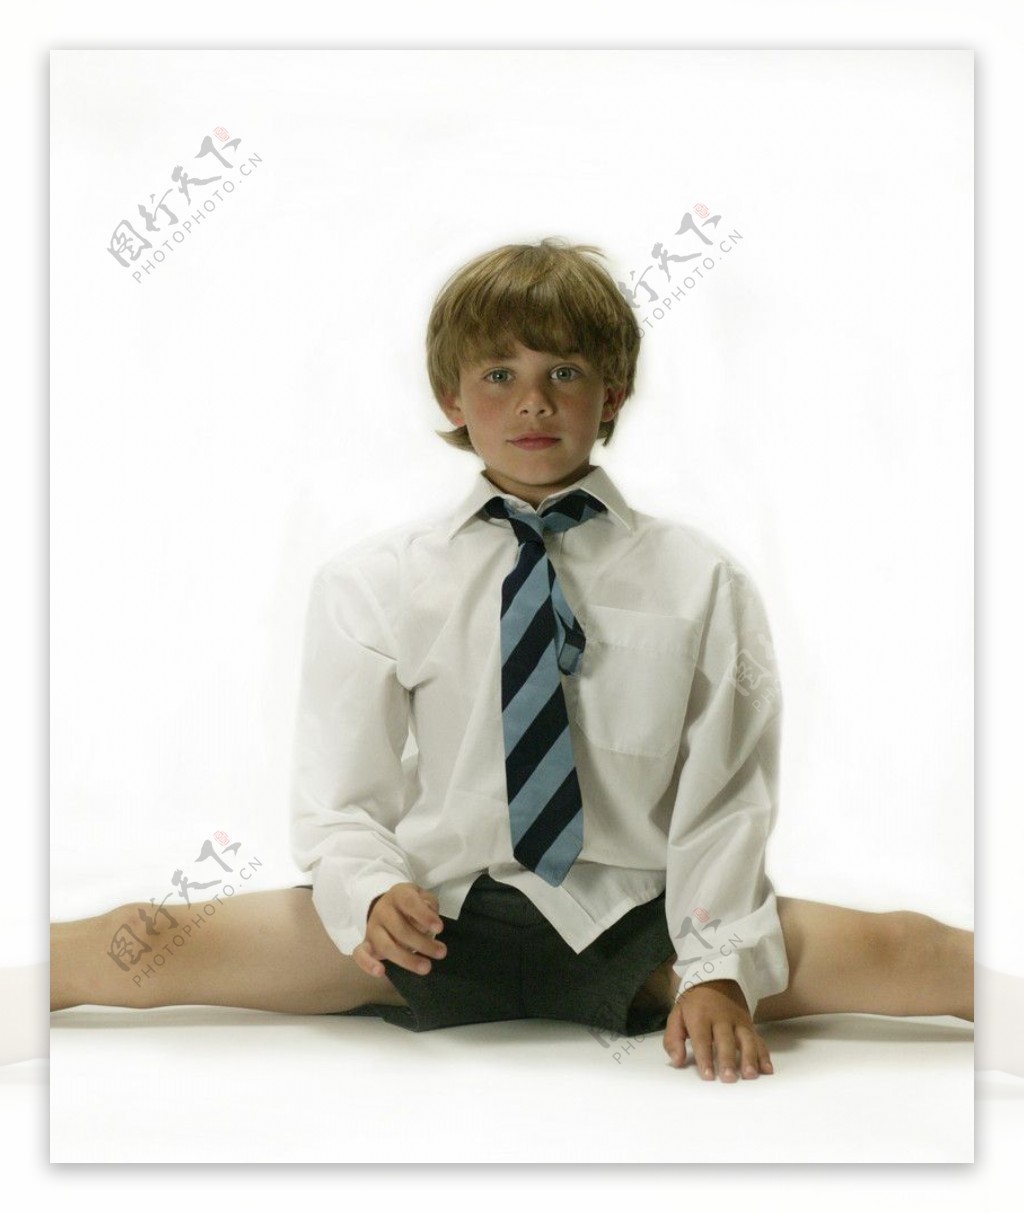 压腿坐着的男孩图片